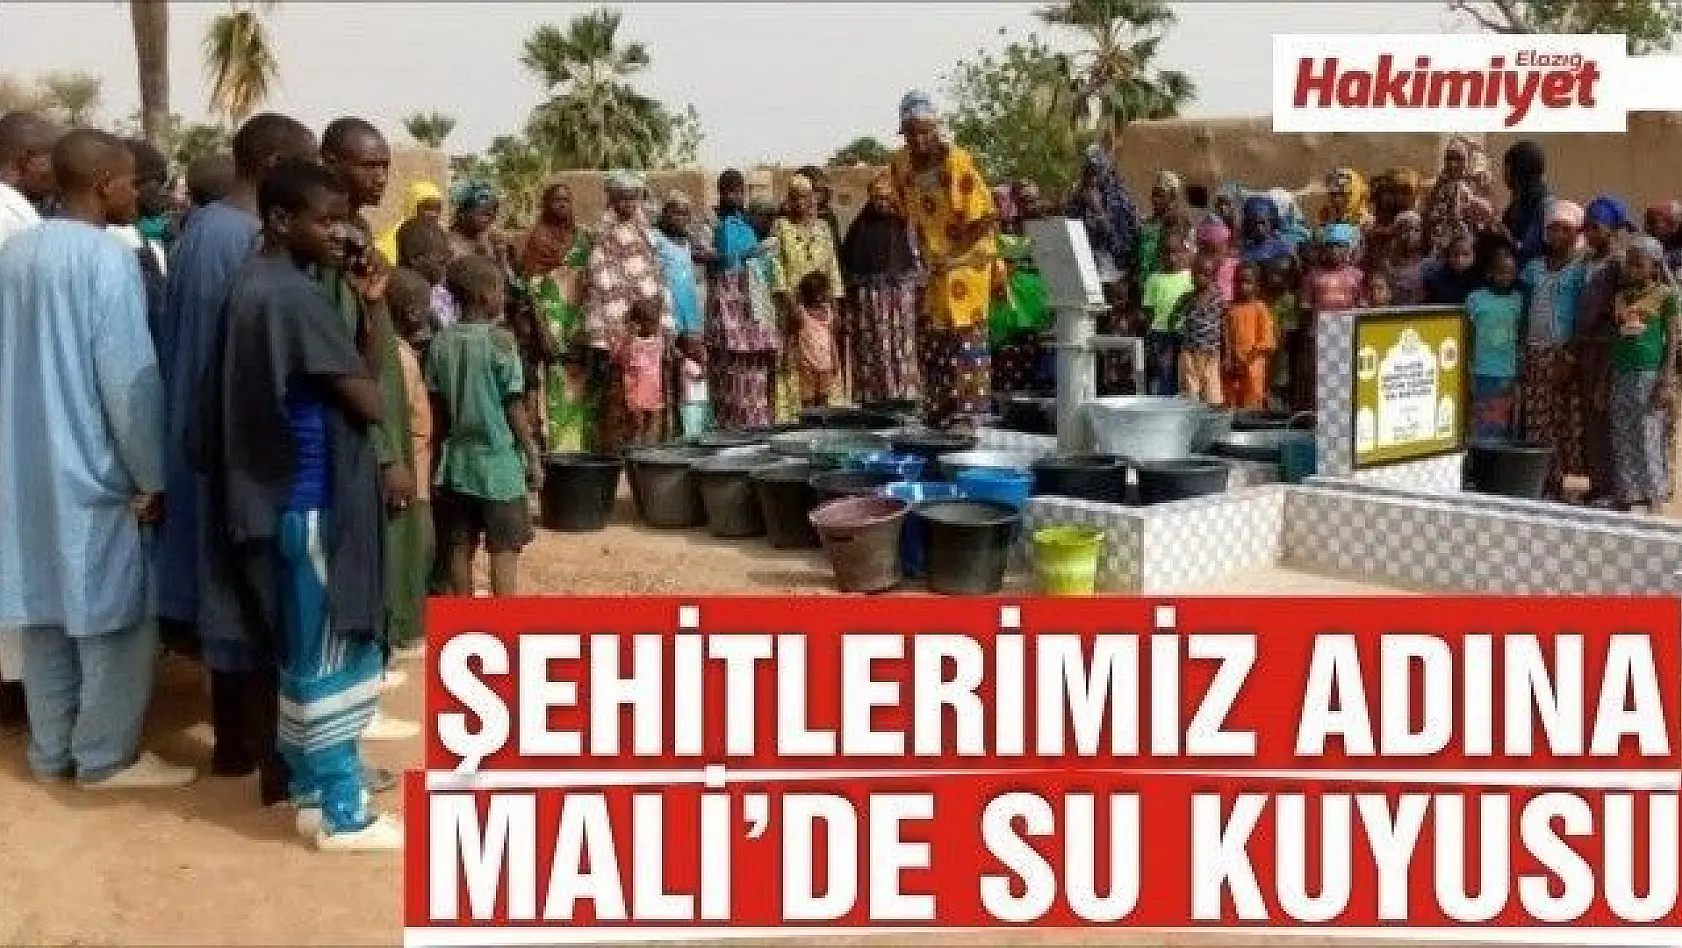 Elazığ'dan şehitler adına Mali'de su kuyusu açıldı